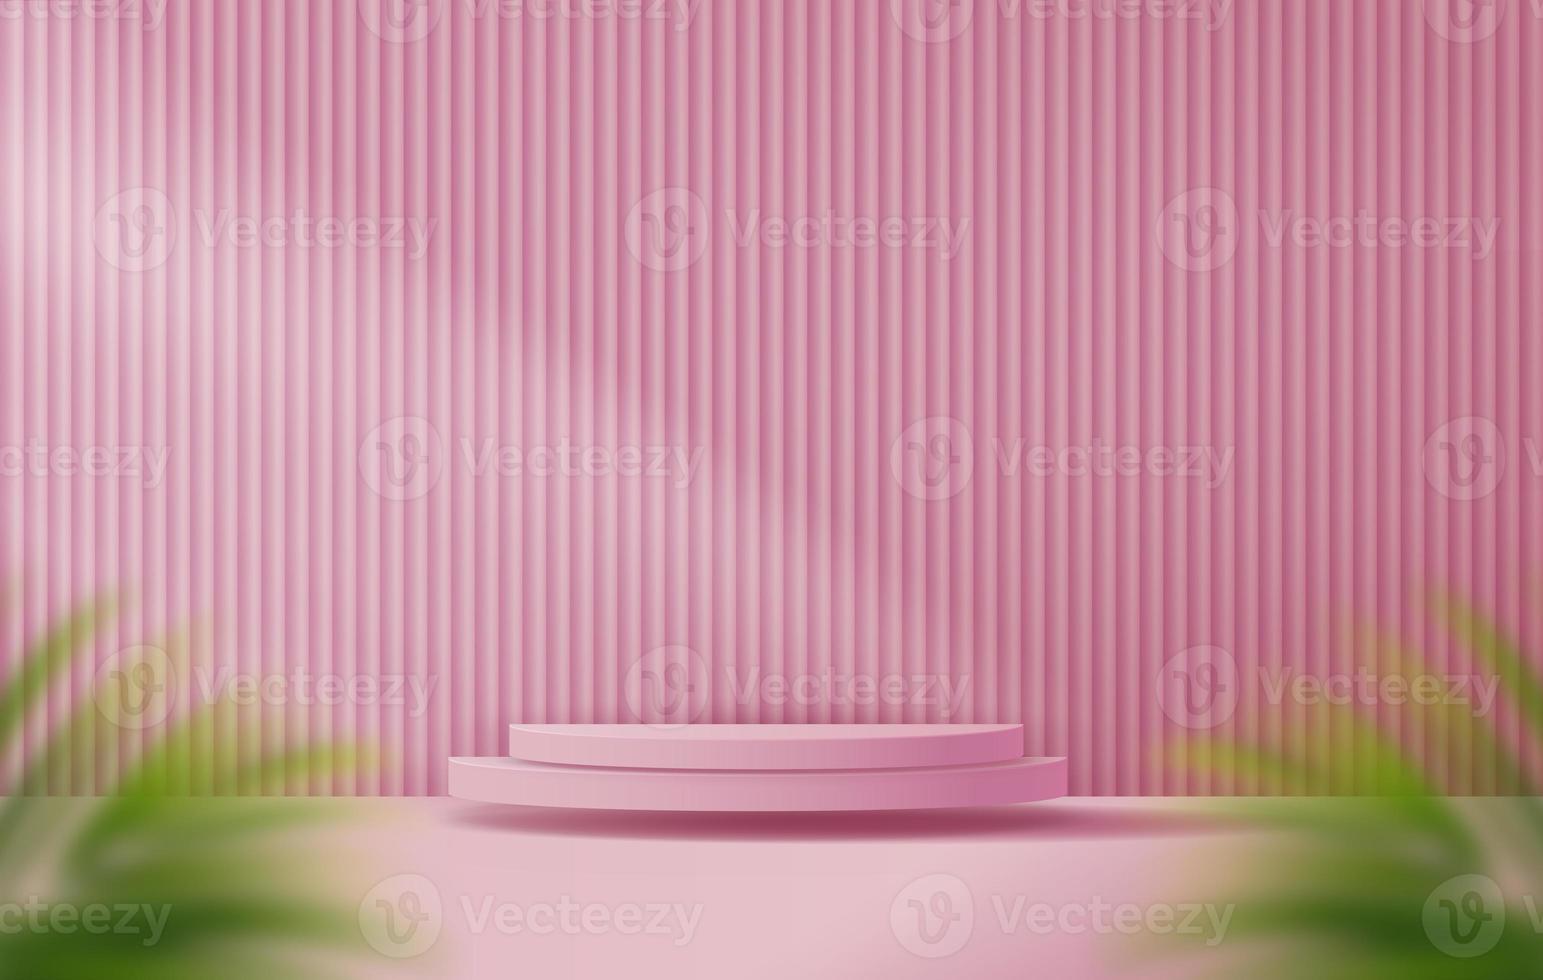 fondo rosa claro cosmético pantalla de podio mínima y premium para la presentación del producto, marca y presentación del empaque. escenario de estudio con sombra de fondo de hoja. diseño de ilustración 3d foto